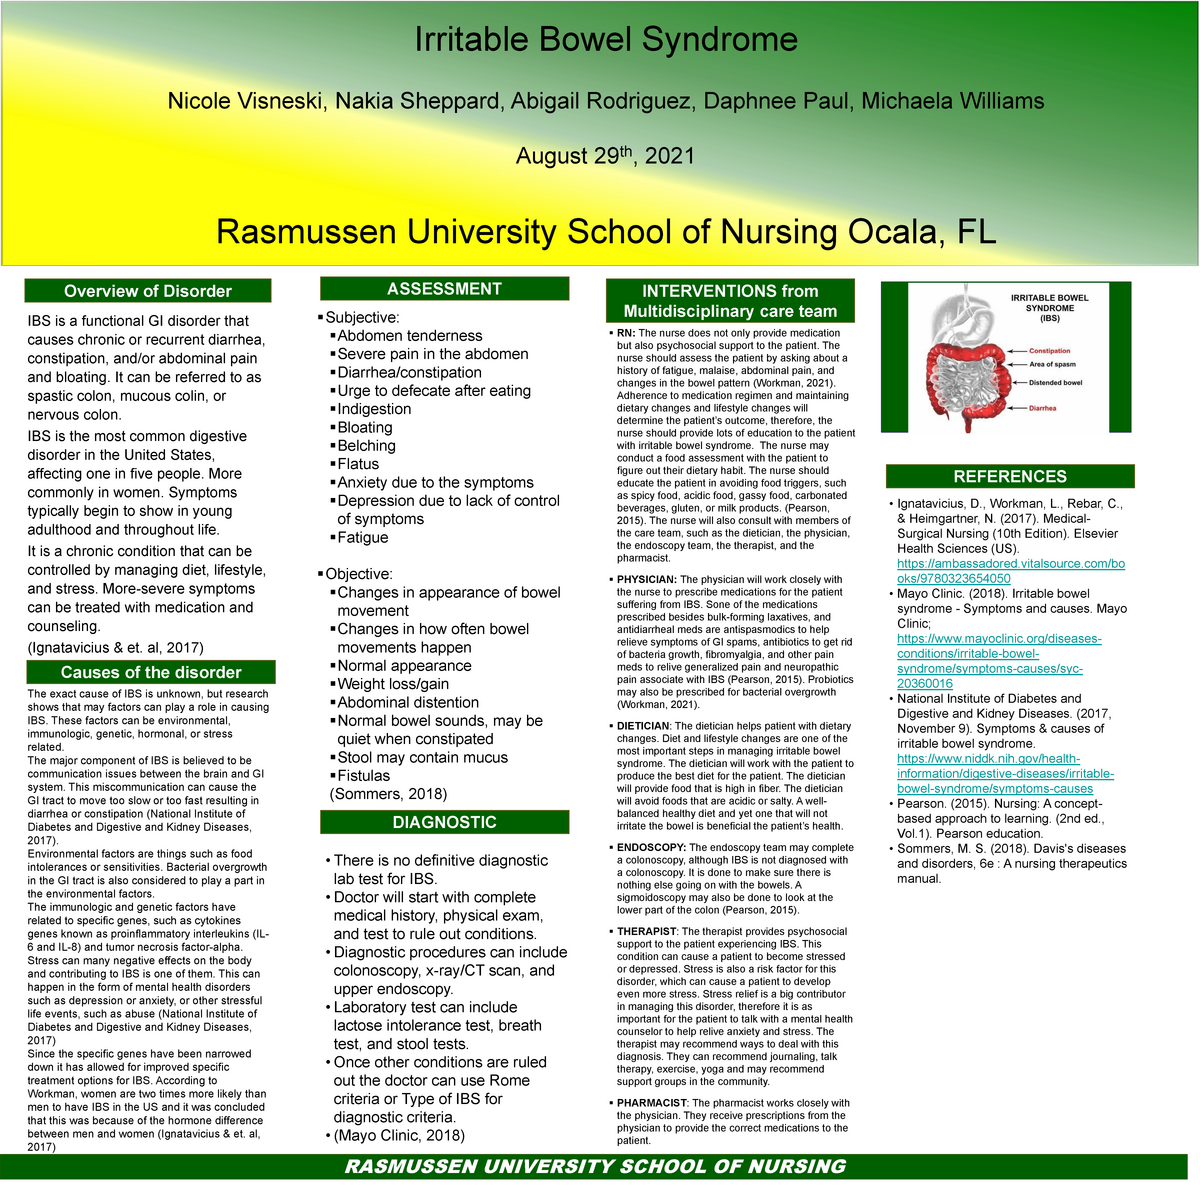 Module 8 Assignment RASMUSSEN UNIVERSITY SCHOOL OF NURSING Overview